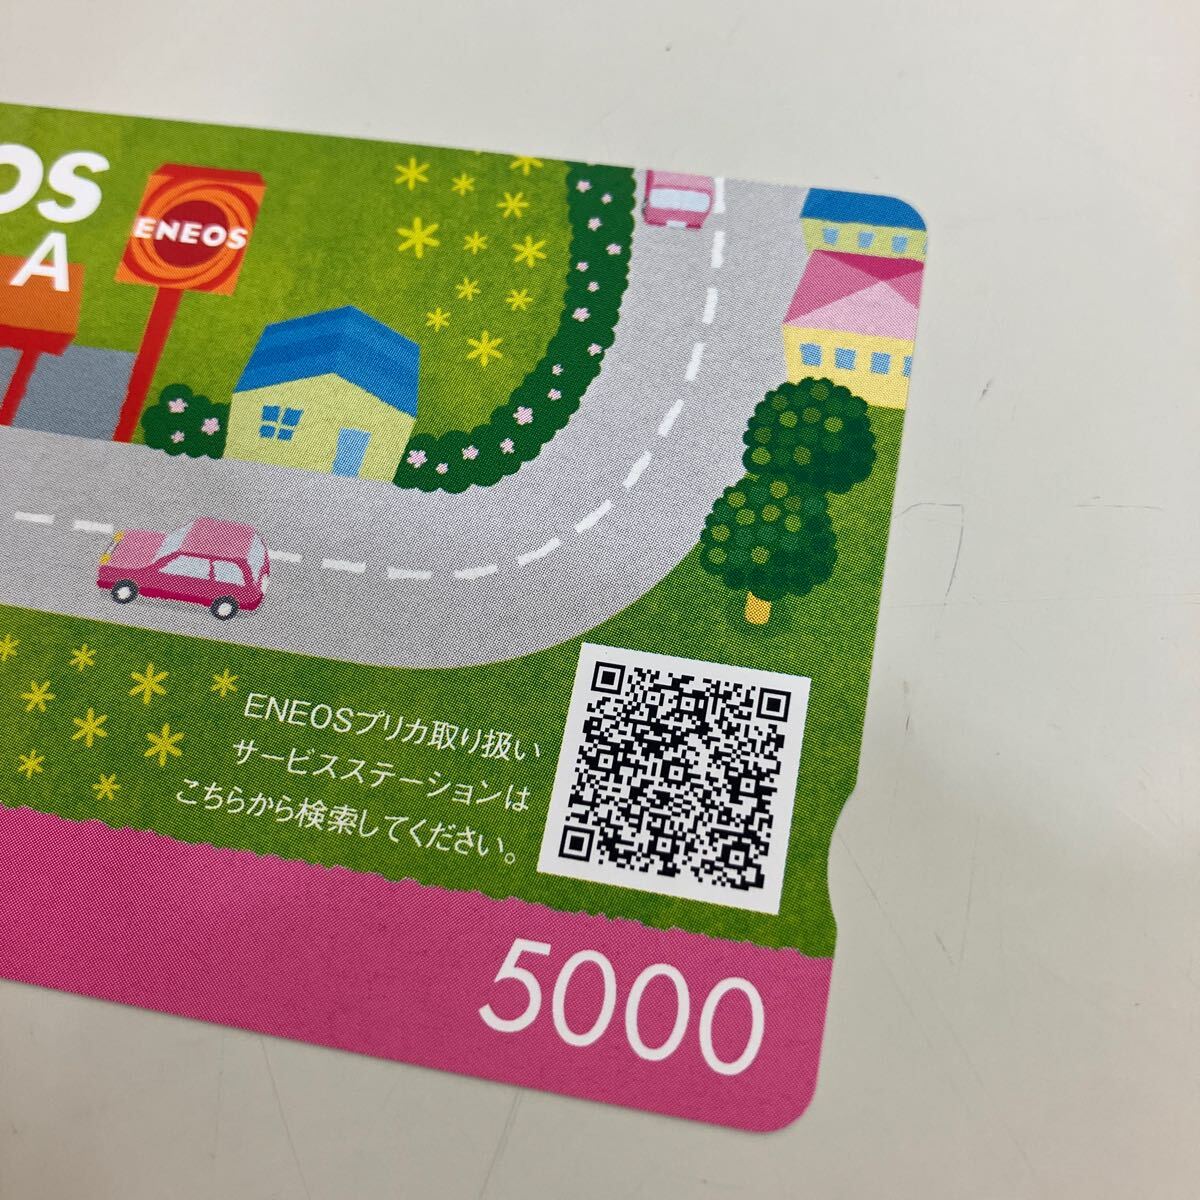 新品未使用品 ENEOSプリカ 5000円 エネオス 金券 チケット プリペイドカード 同梱不可 ALP-T-757の画像6